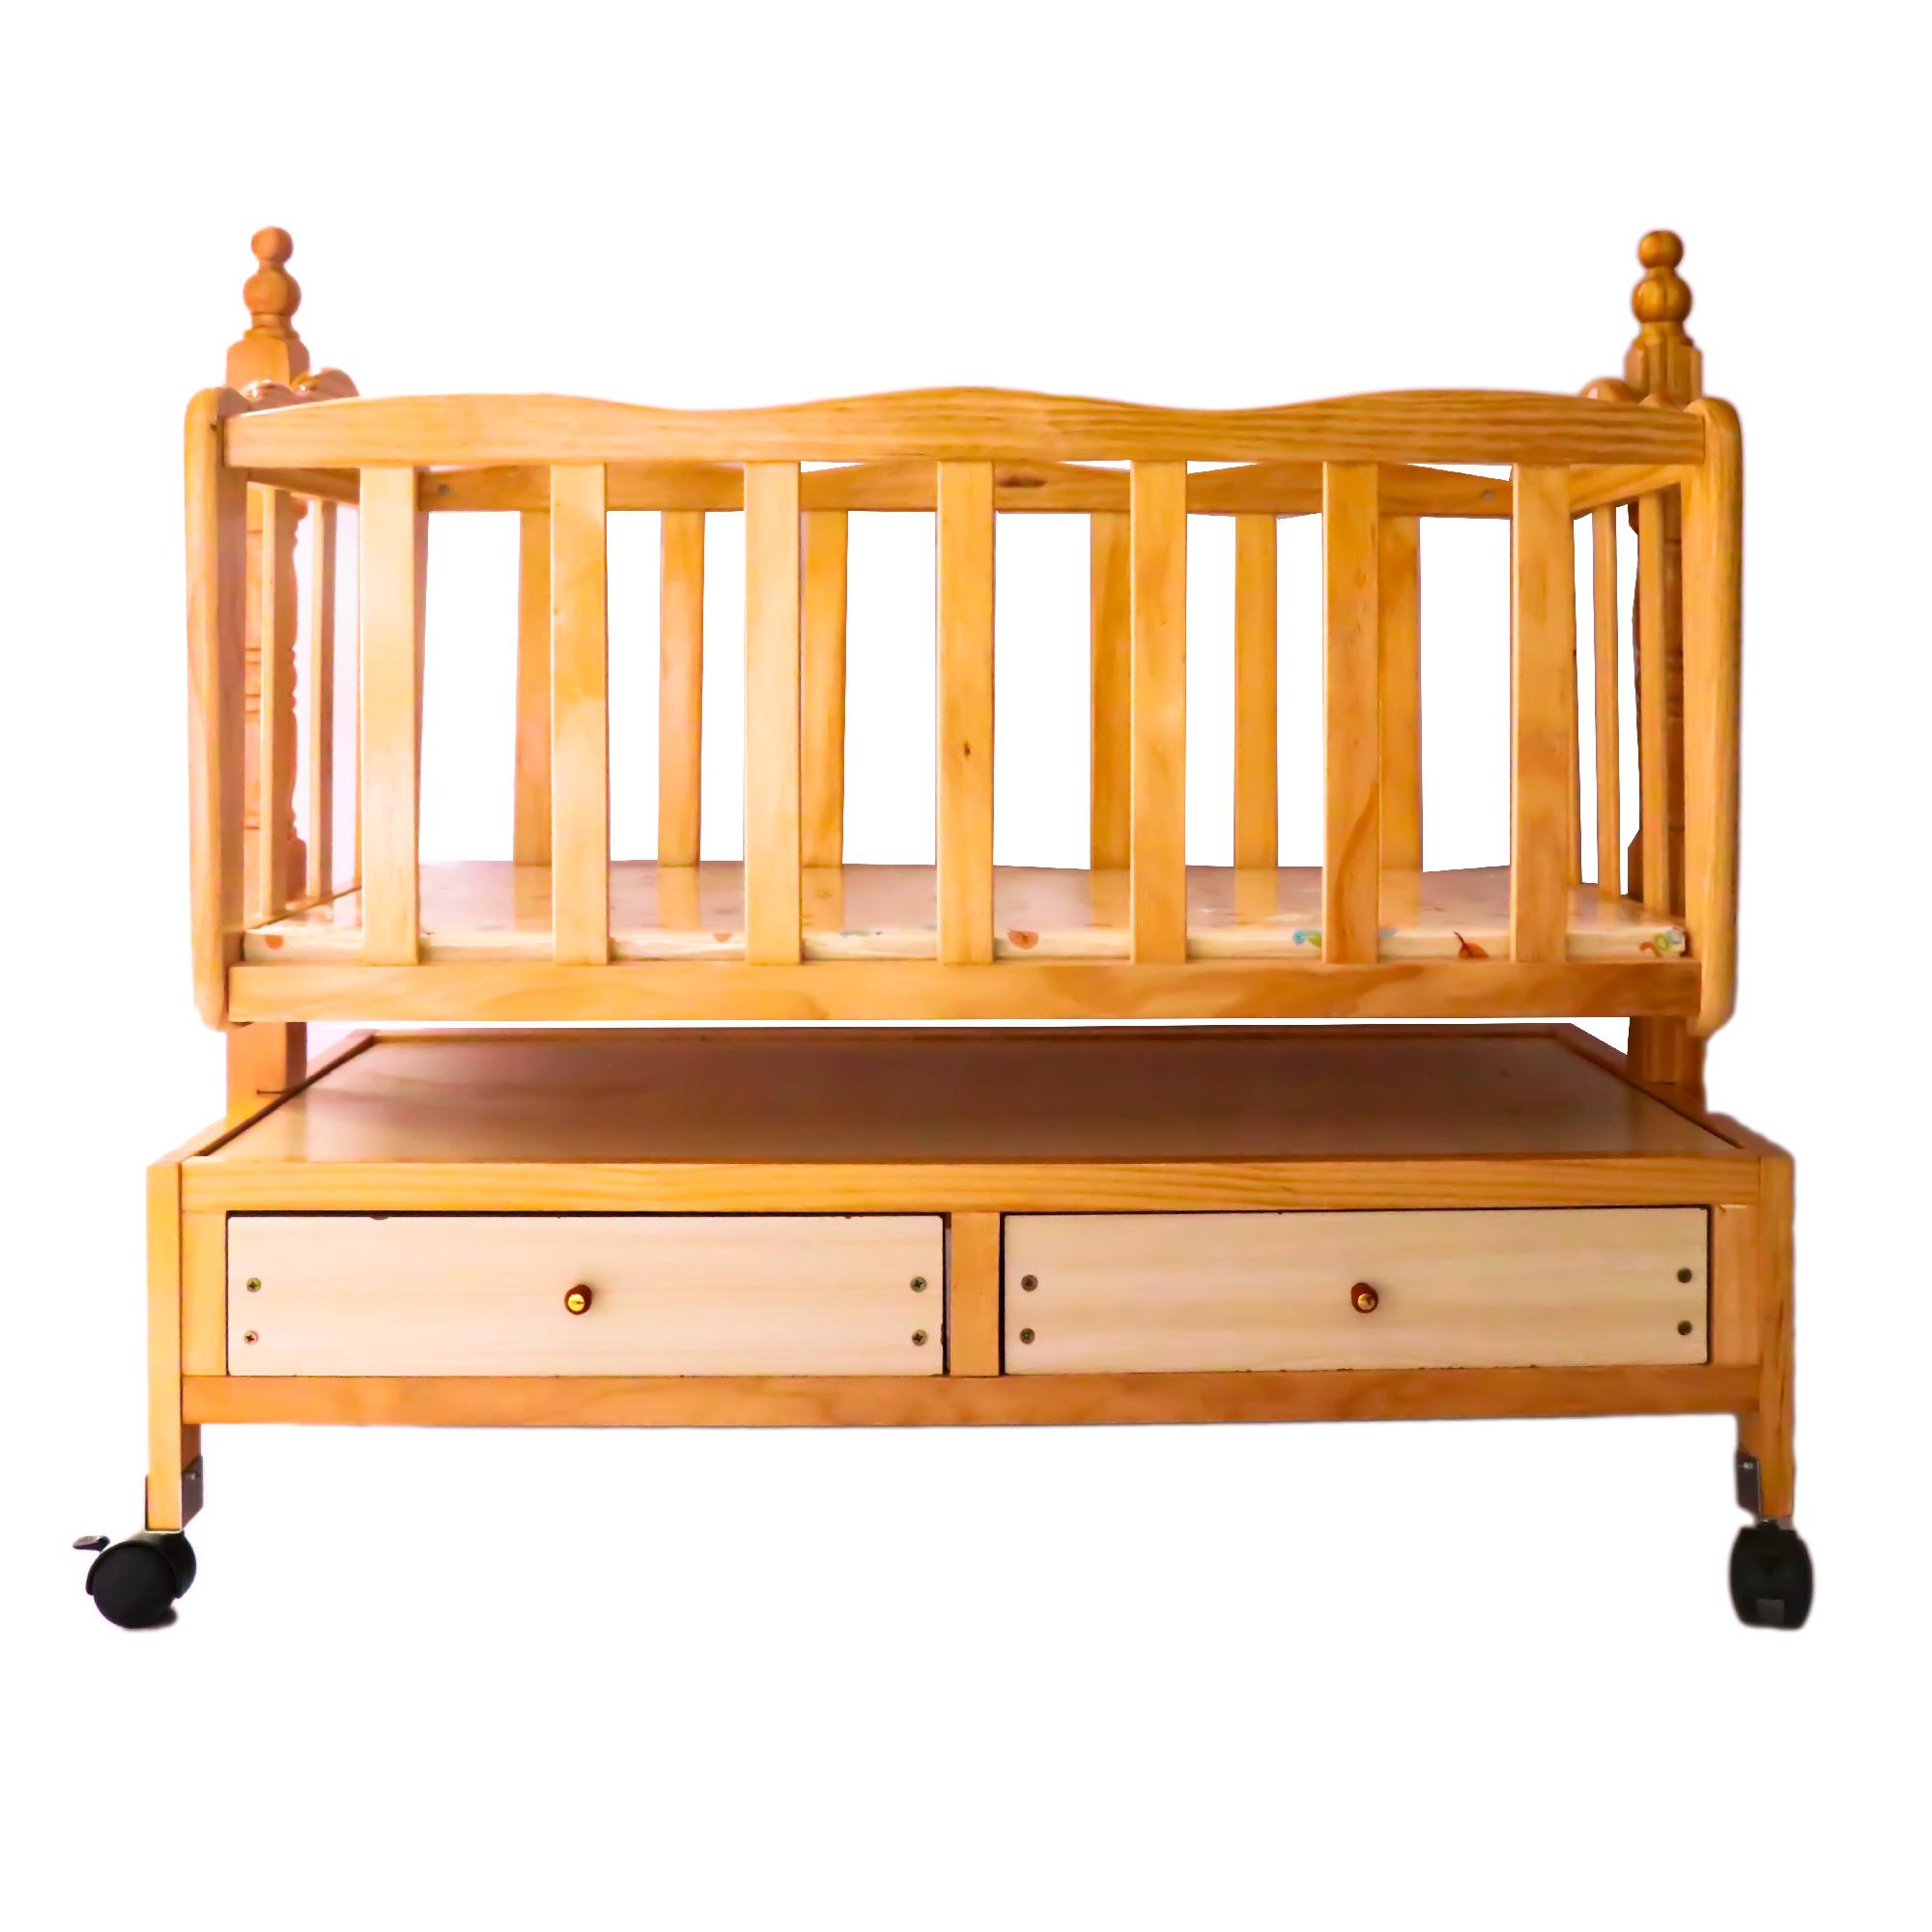 wooden cradle swing